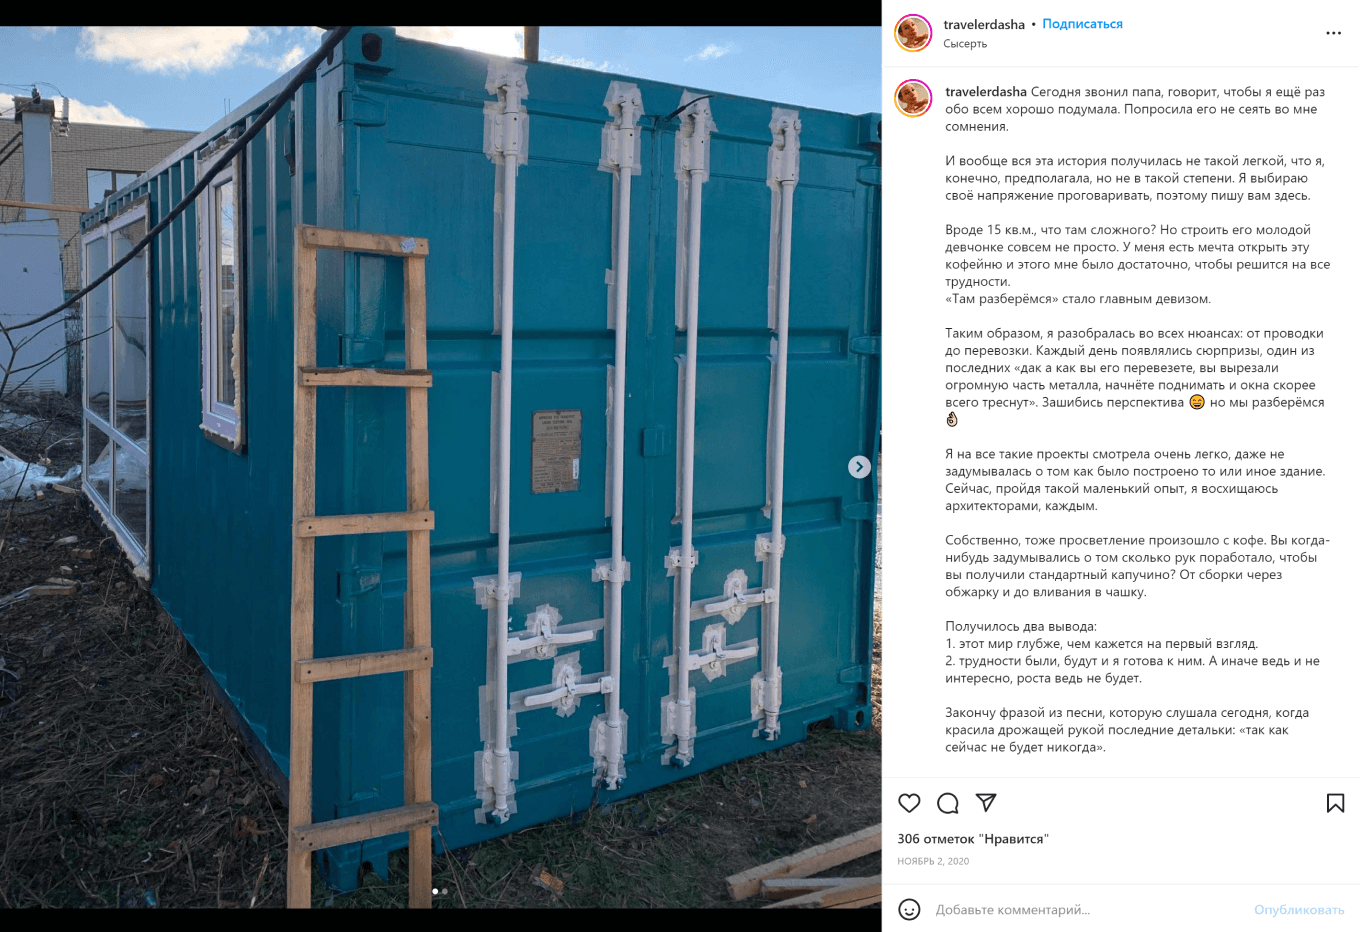 Пост в соцсети о строительстве контейнера